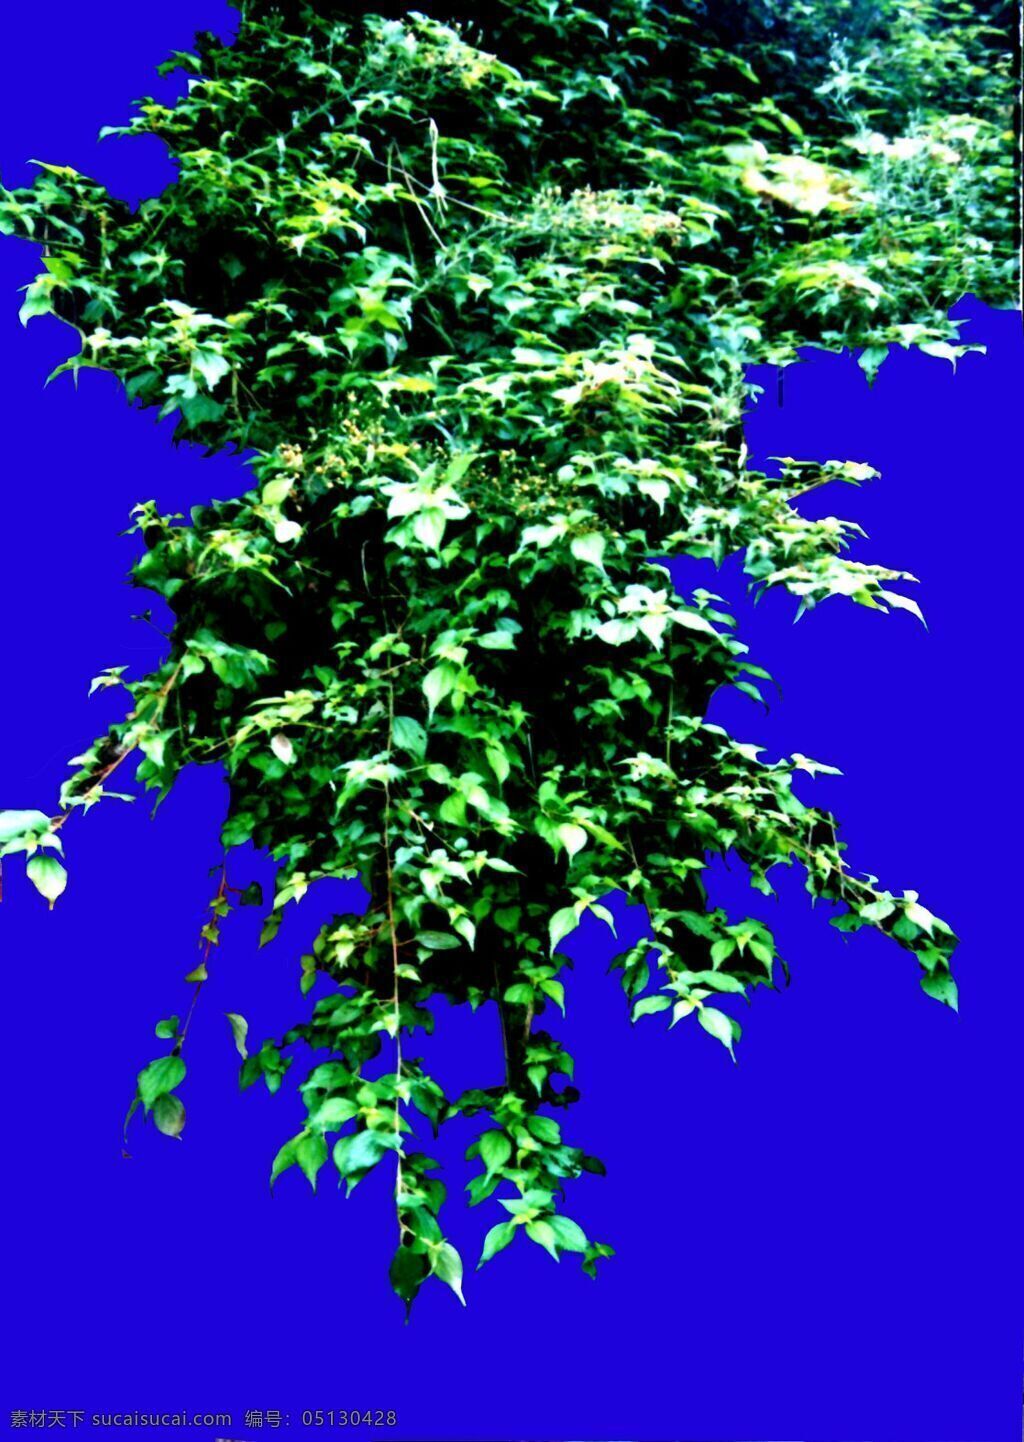 灌木 植物 贴图素材 建筑装饰 2003 设计素材 蓝色